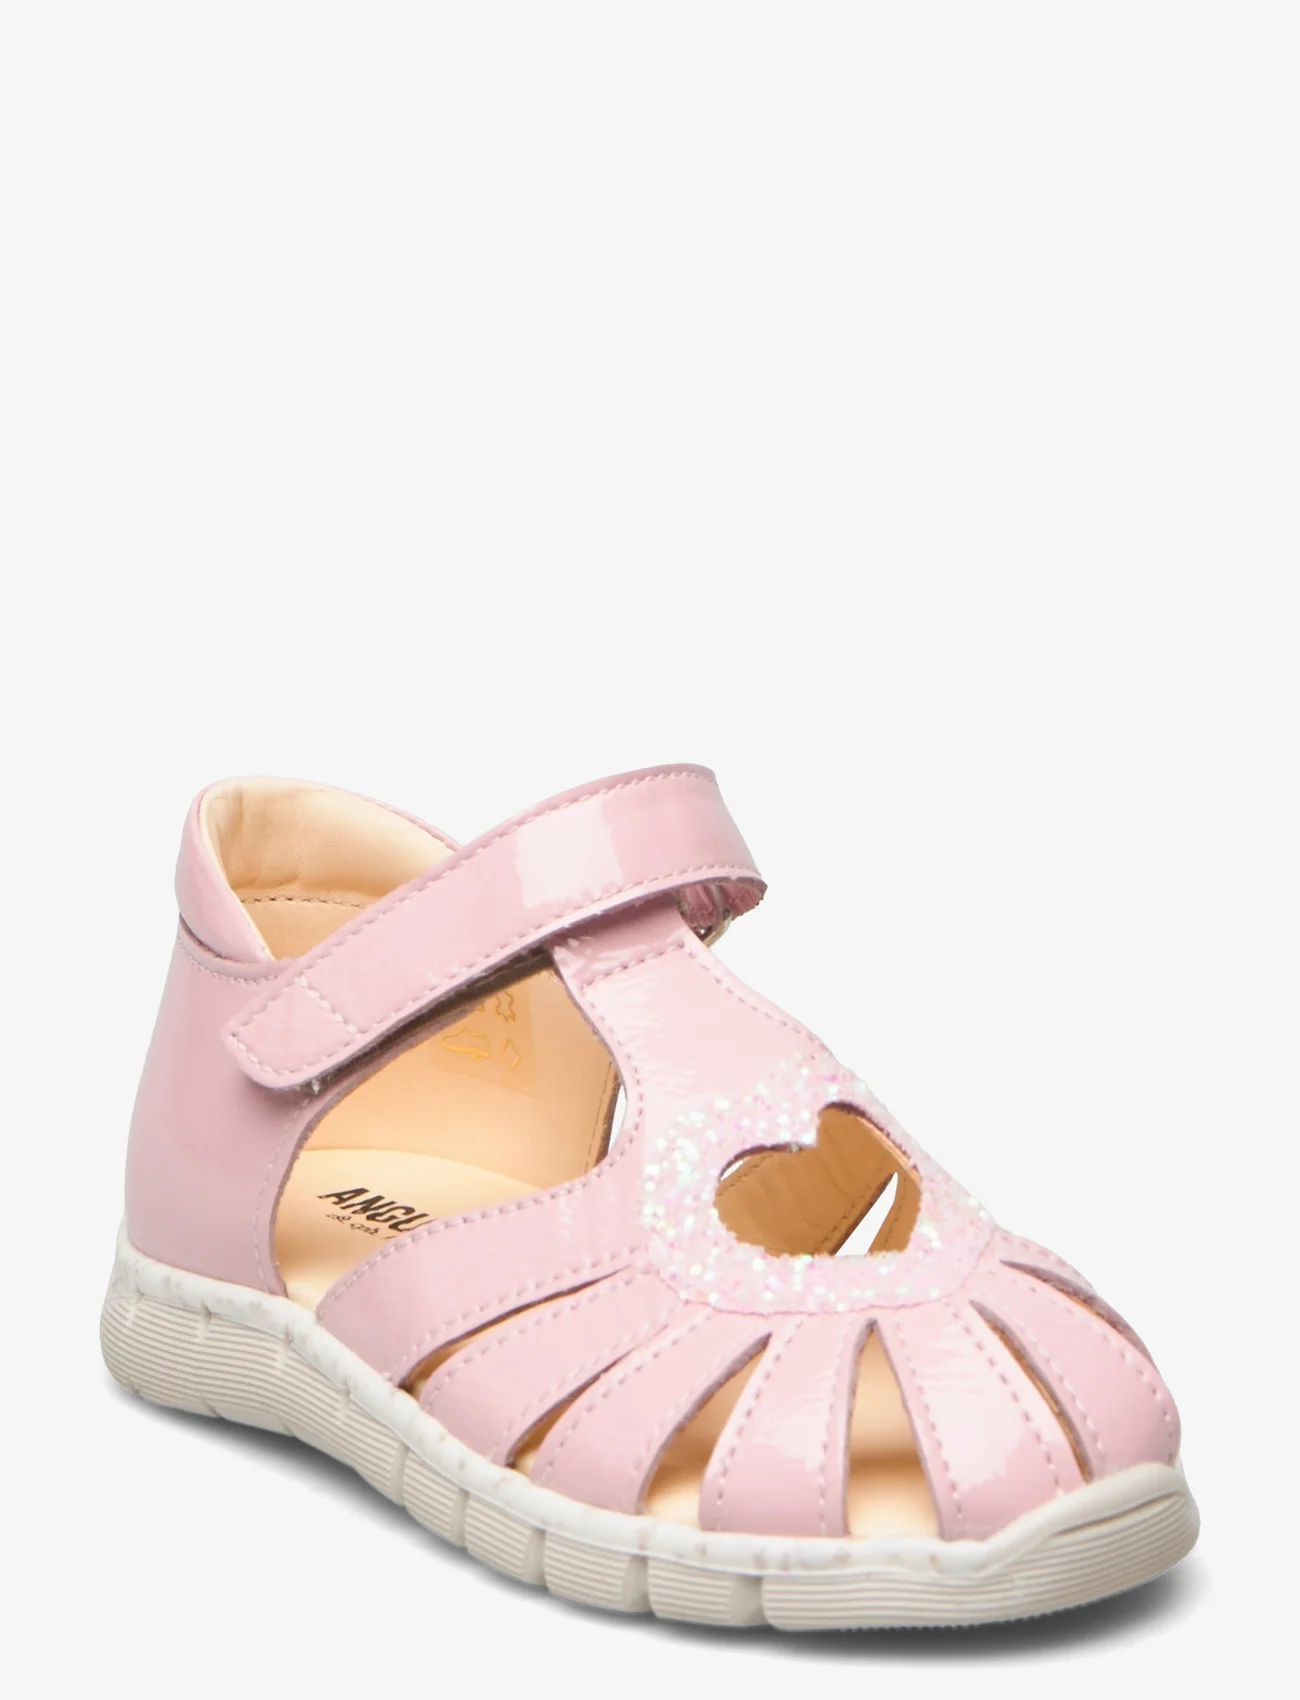 ANGULUS - Sandals - flat - closed toe -  - vasaras piedāvājumi - 1304/2698 peach/ rosa glitter - 0